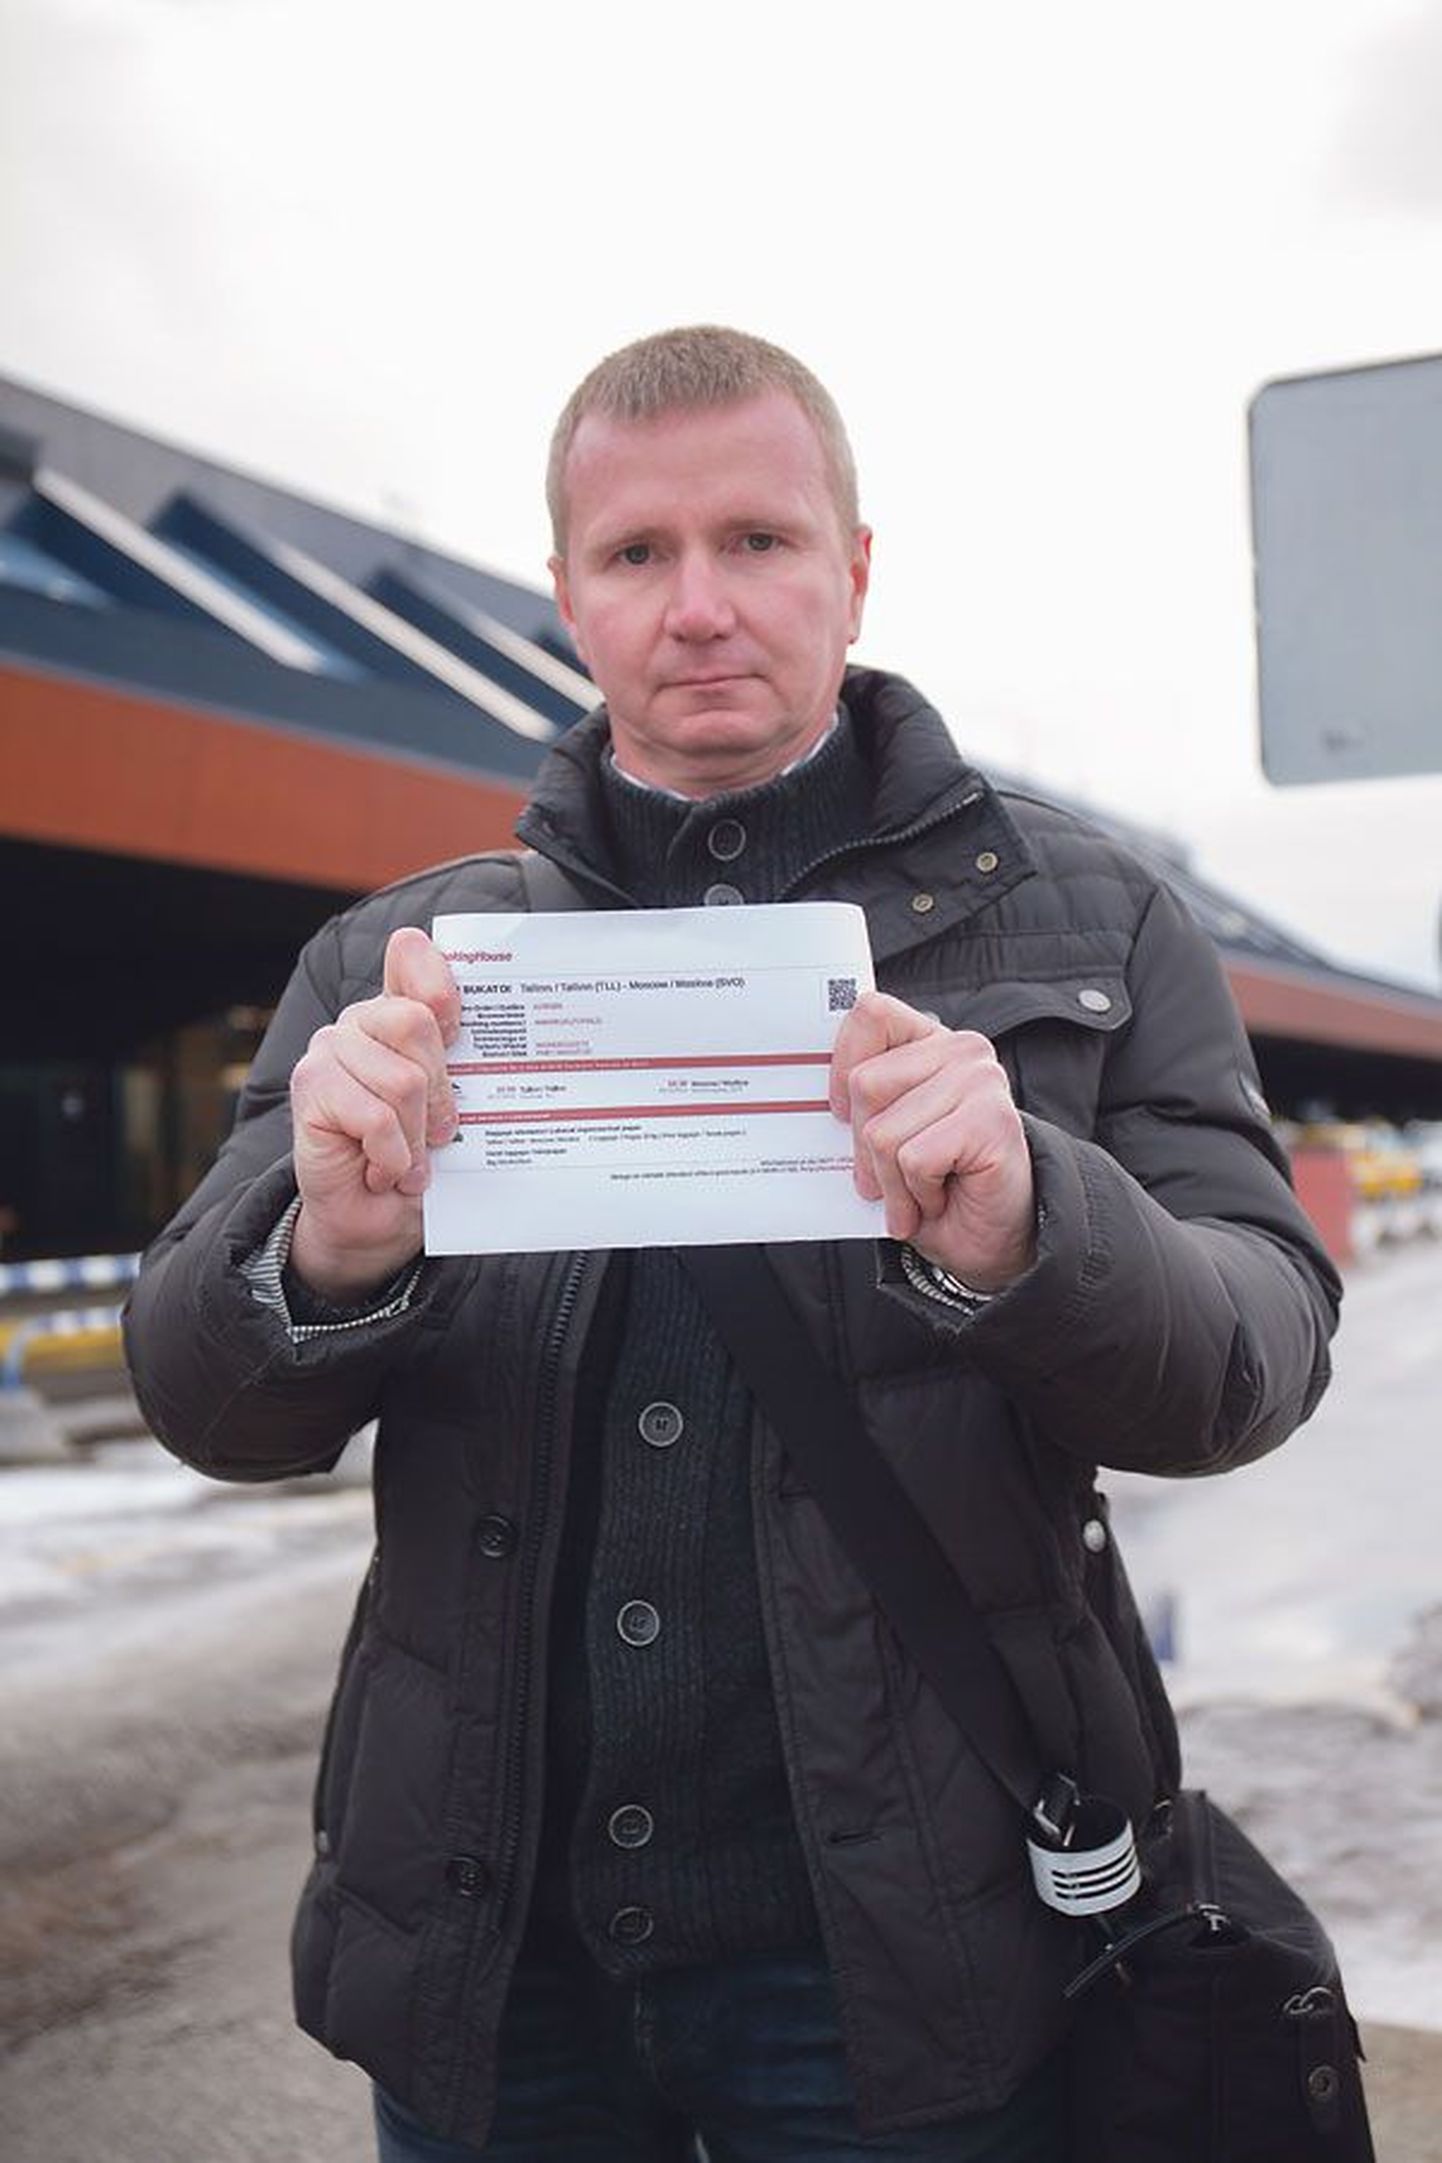 Игорь Букатый был вынужден дважды заплатить за один билет на самолет. 
Деньги обещают вернуть, но об этом пассажир почему-то узнал только от журналиста.